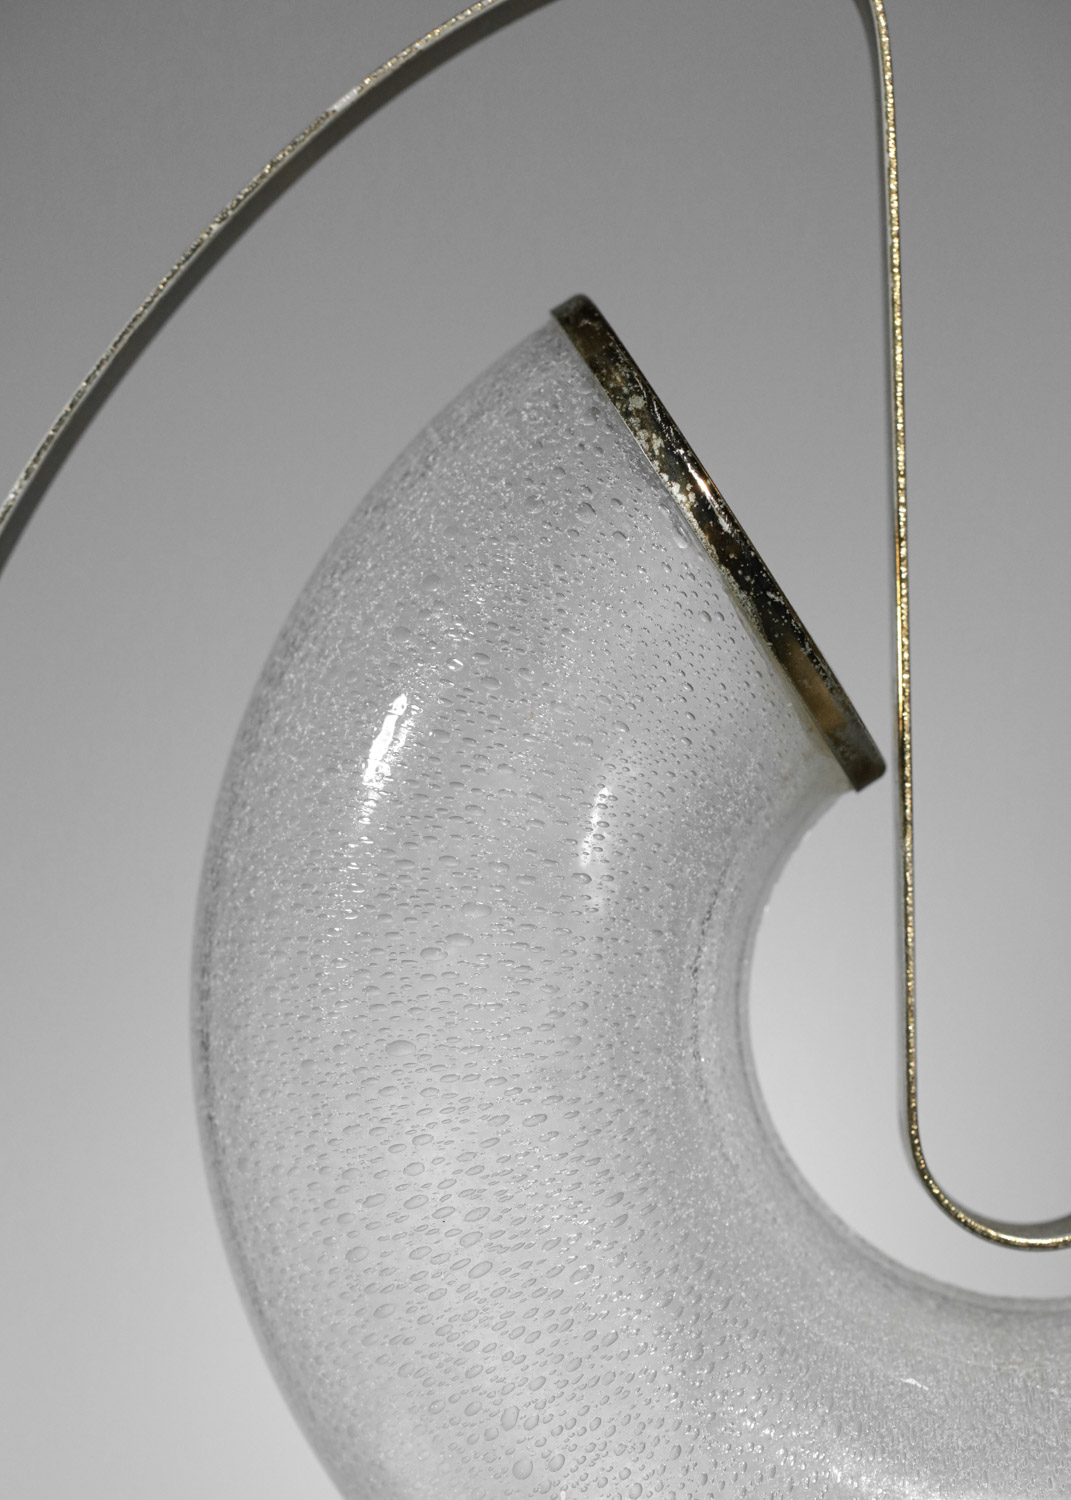 lampe de table italienne carlo nason années 60 en verre -G844